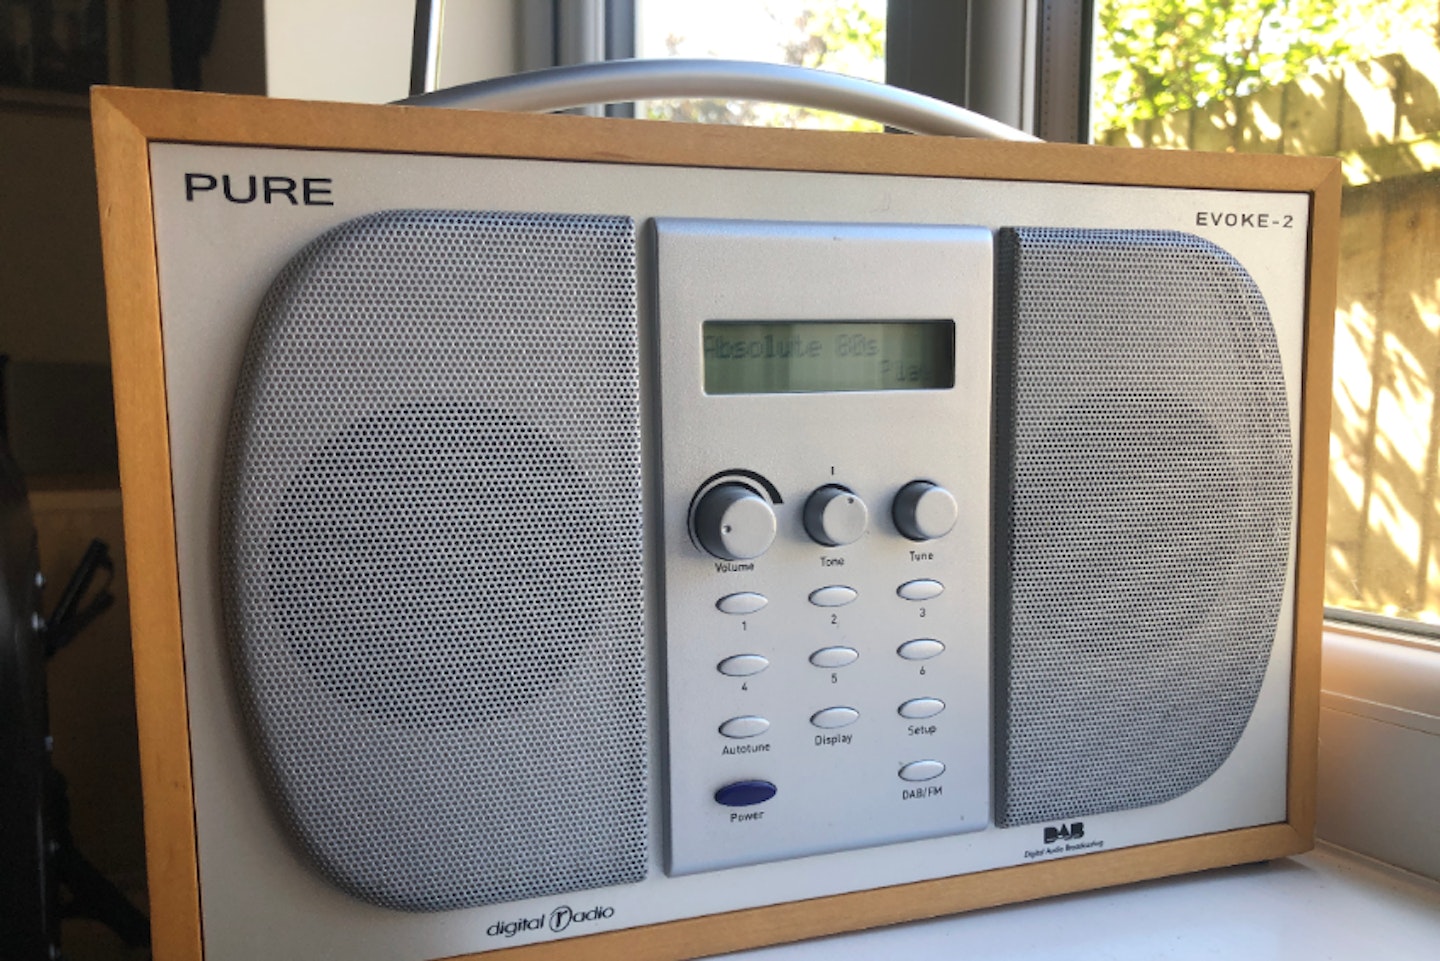 a Pure DAB digital radio